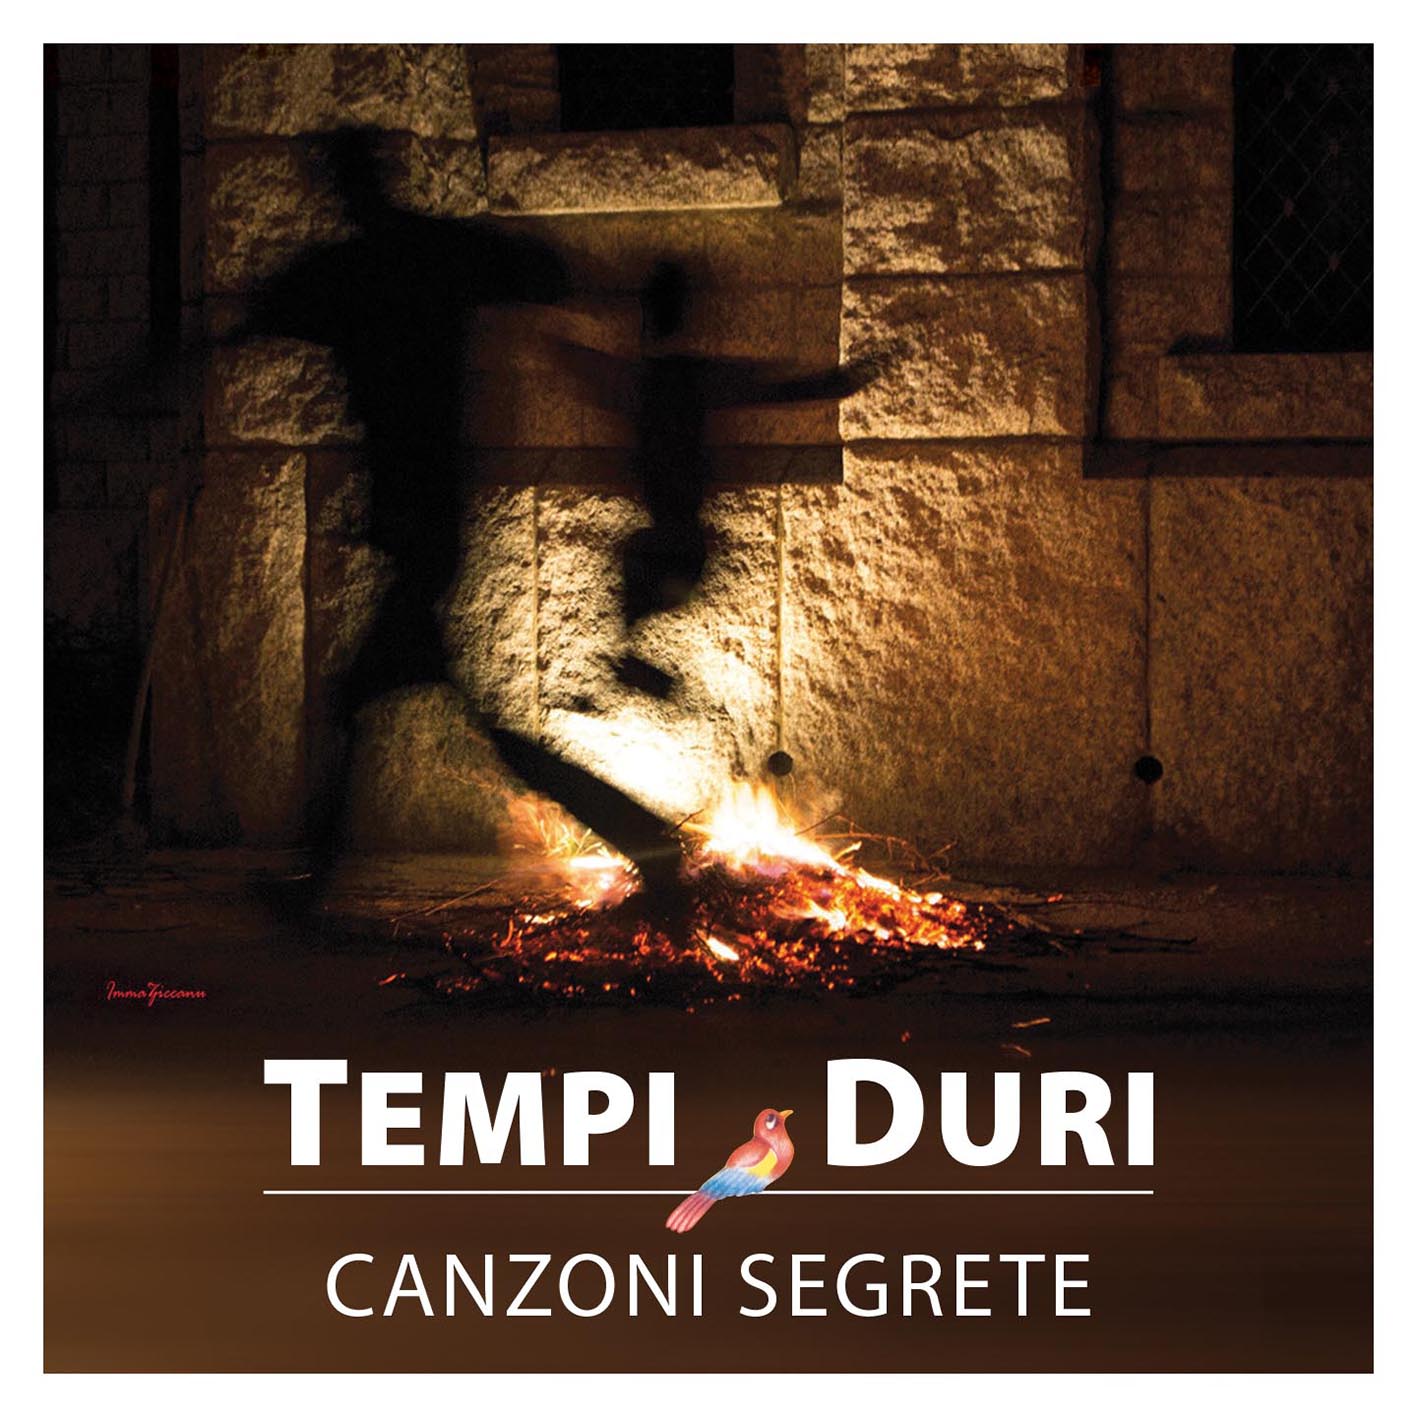  PER TE è il secondo singolo estratto dall'album CANZONI SEGRETE, il nuovo lavoro dei TEMPI DURI dopo 30 anni di silenzio